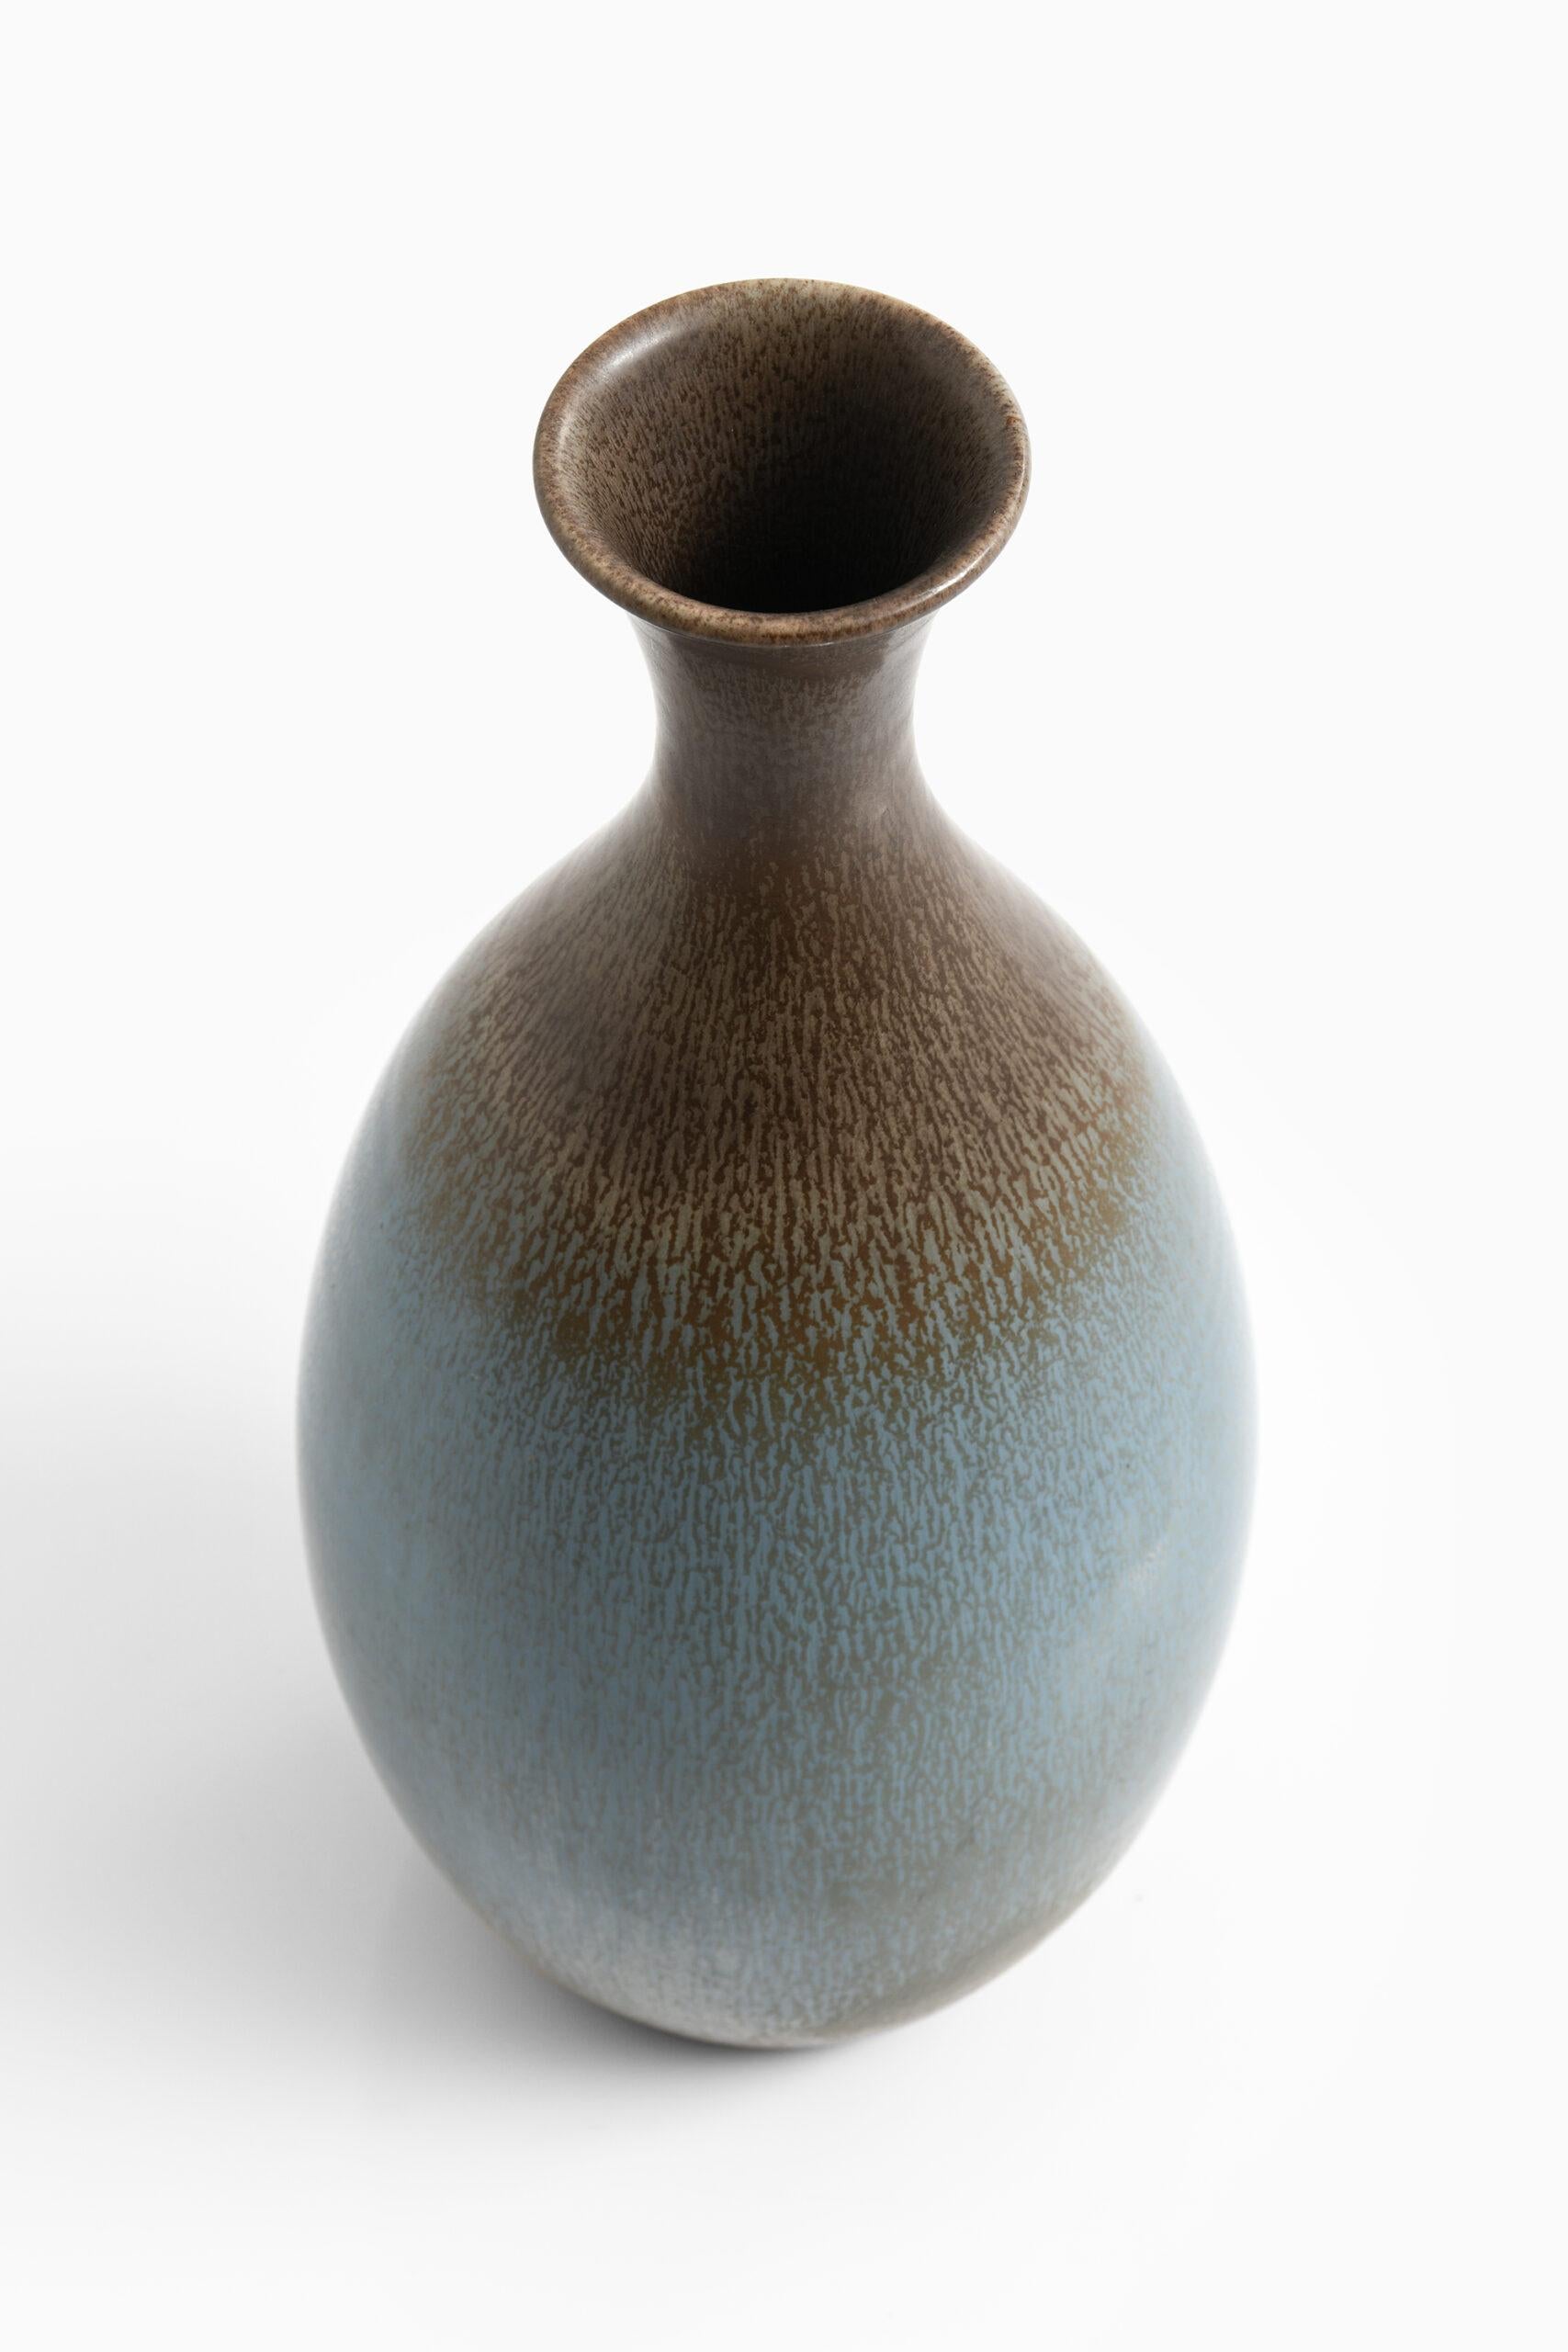 Grand vase de sol en céramique unique conçu par Sven Wejsfelt. Produit par Gustavsberg en Suède.